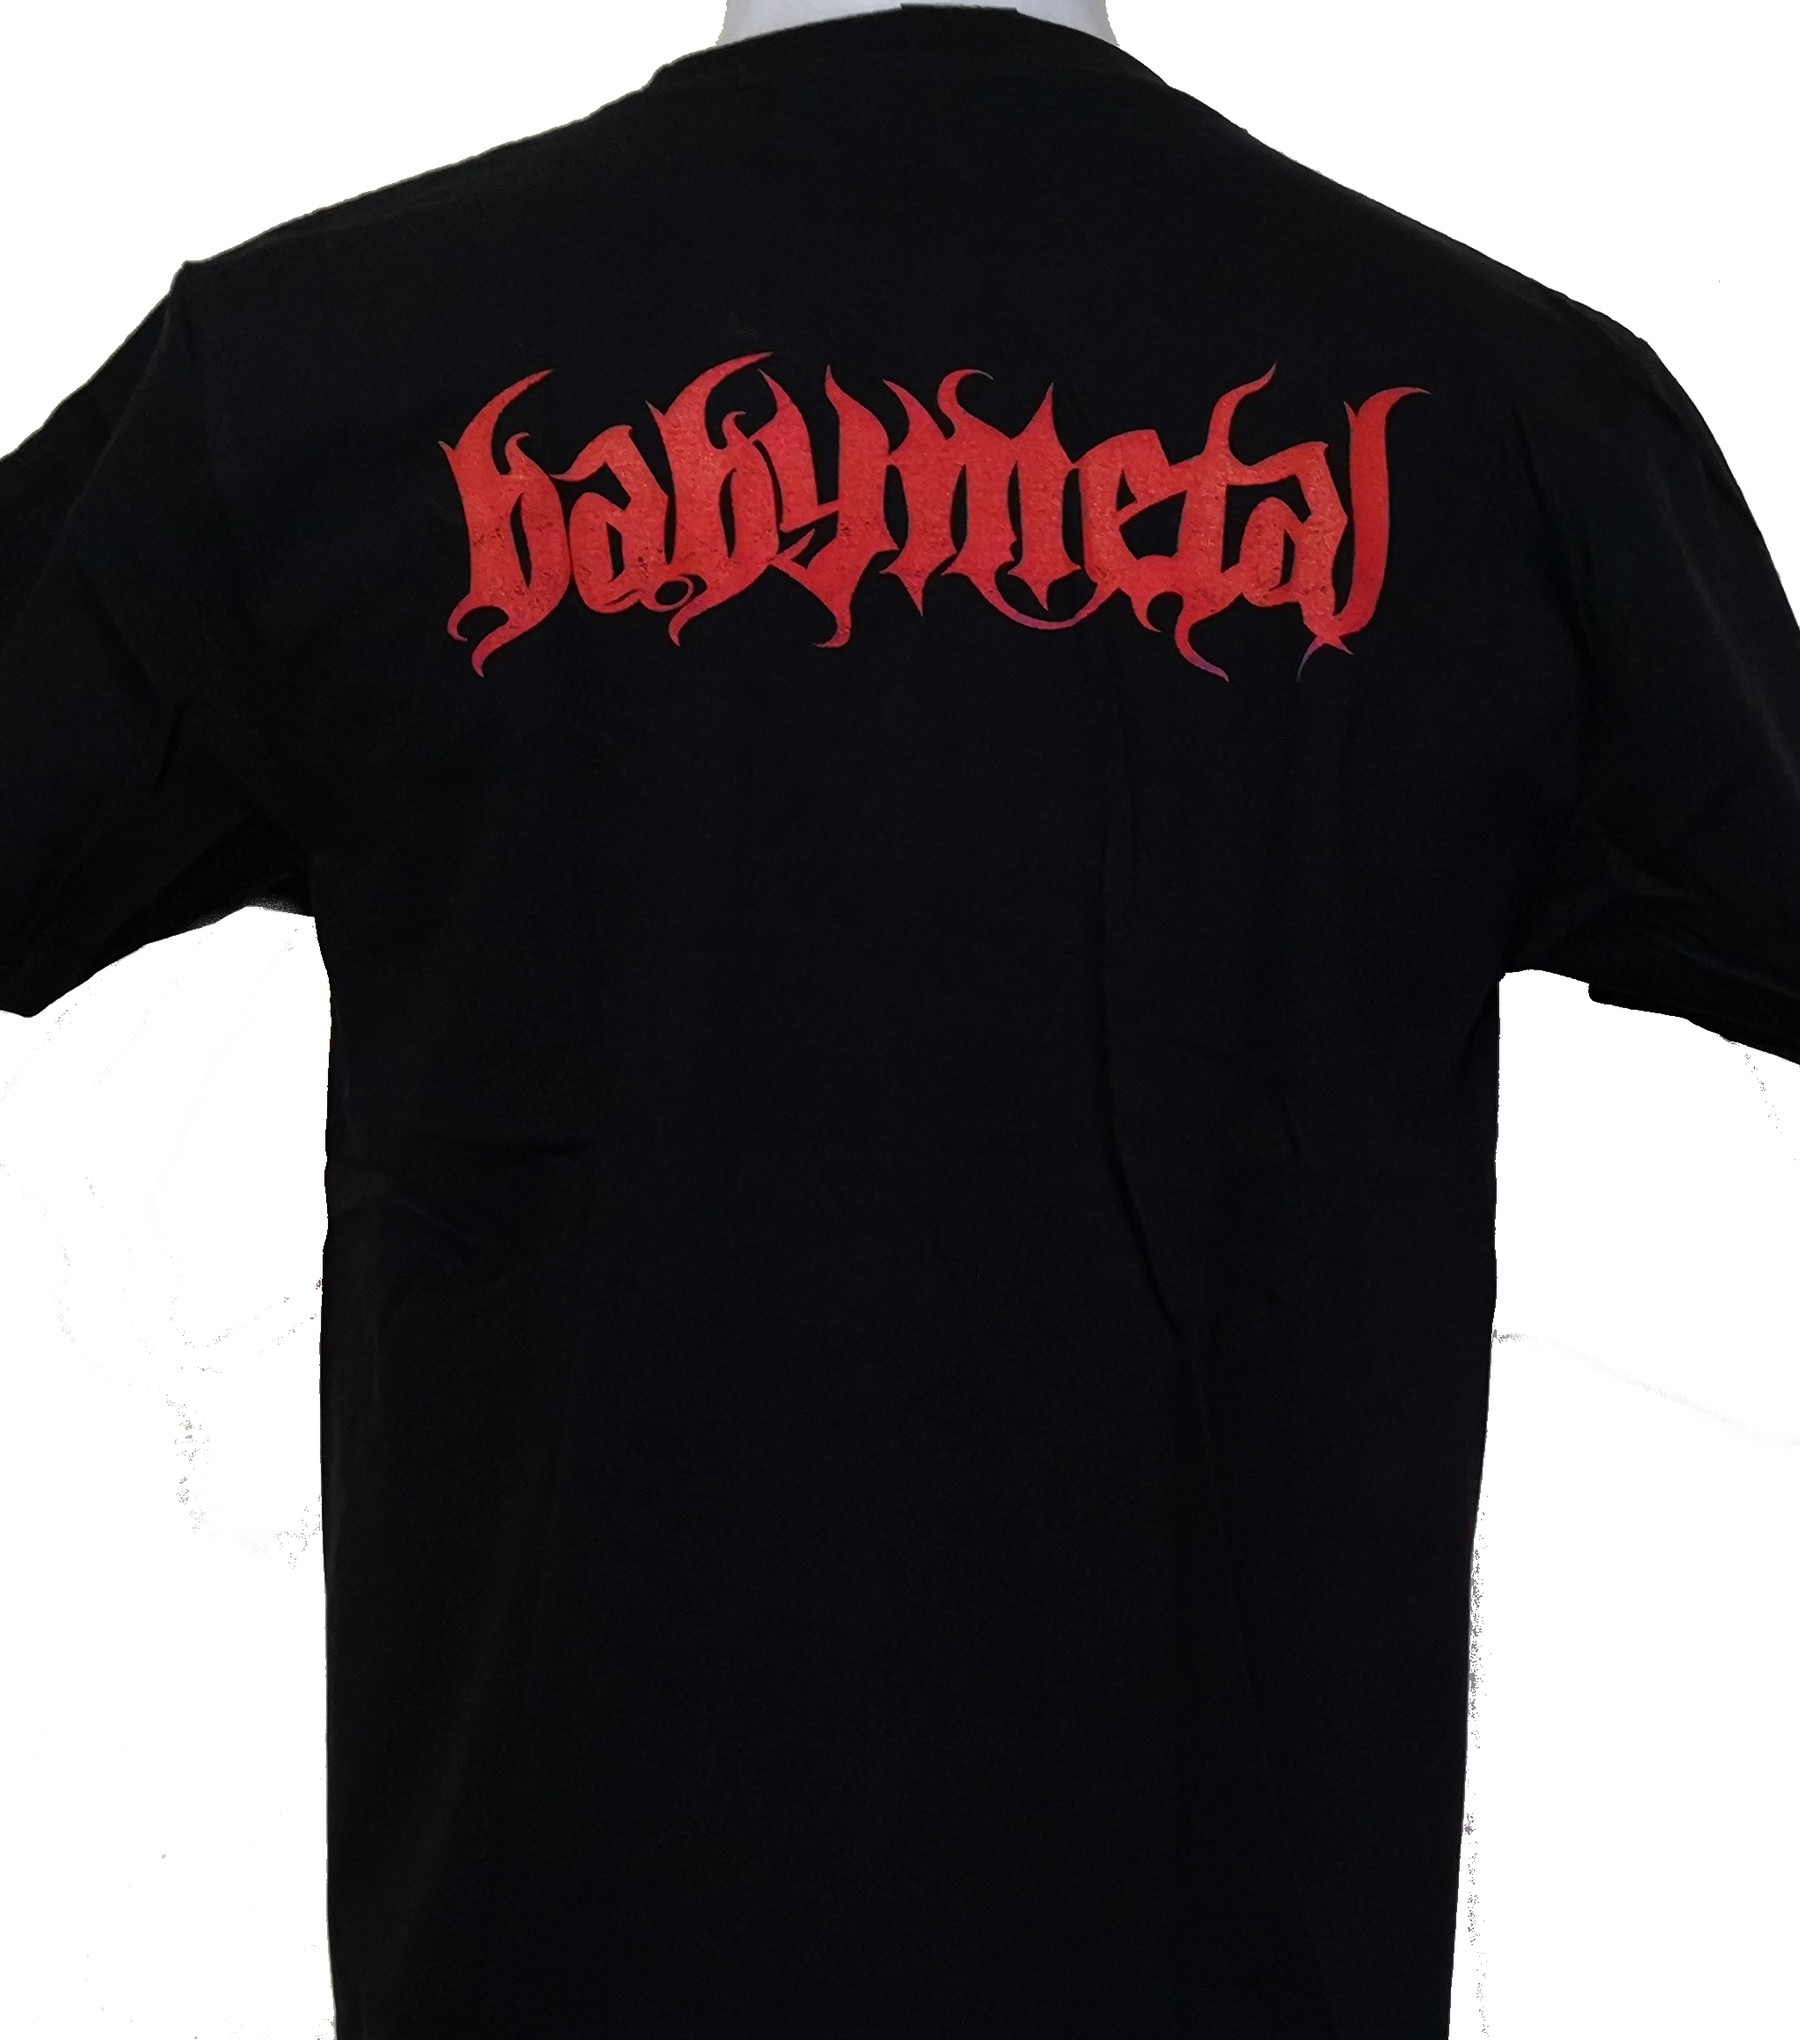 BabyMetal t-shirt size M